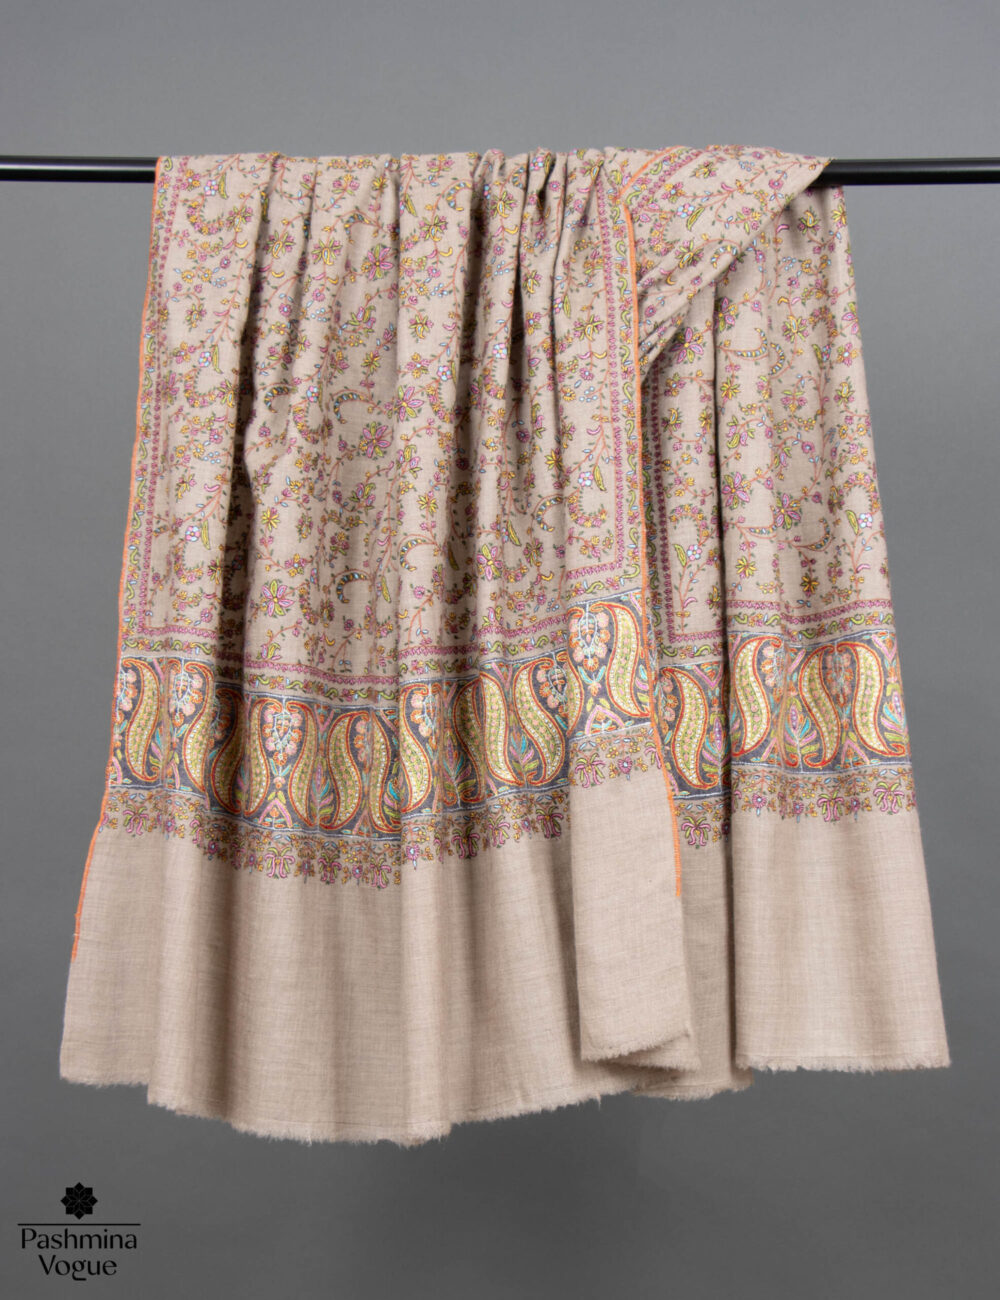 shawls-in-jaipur